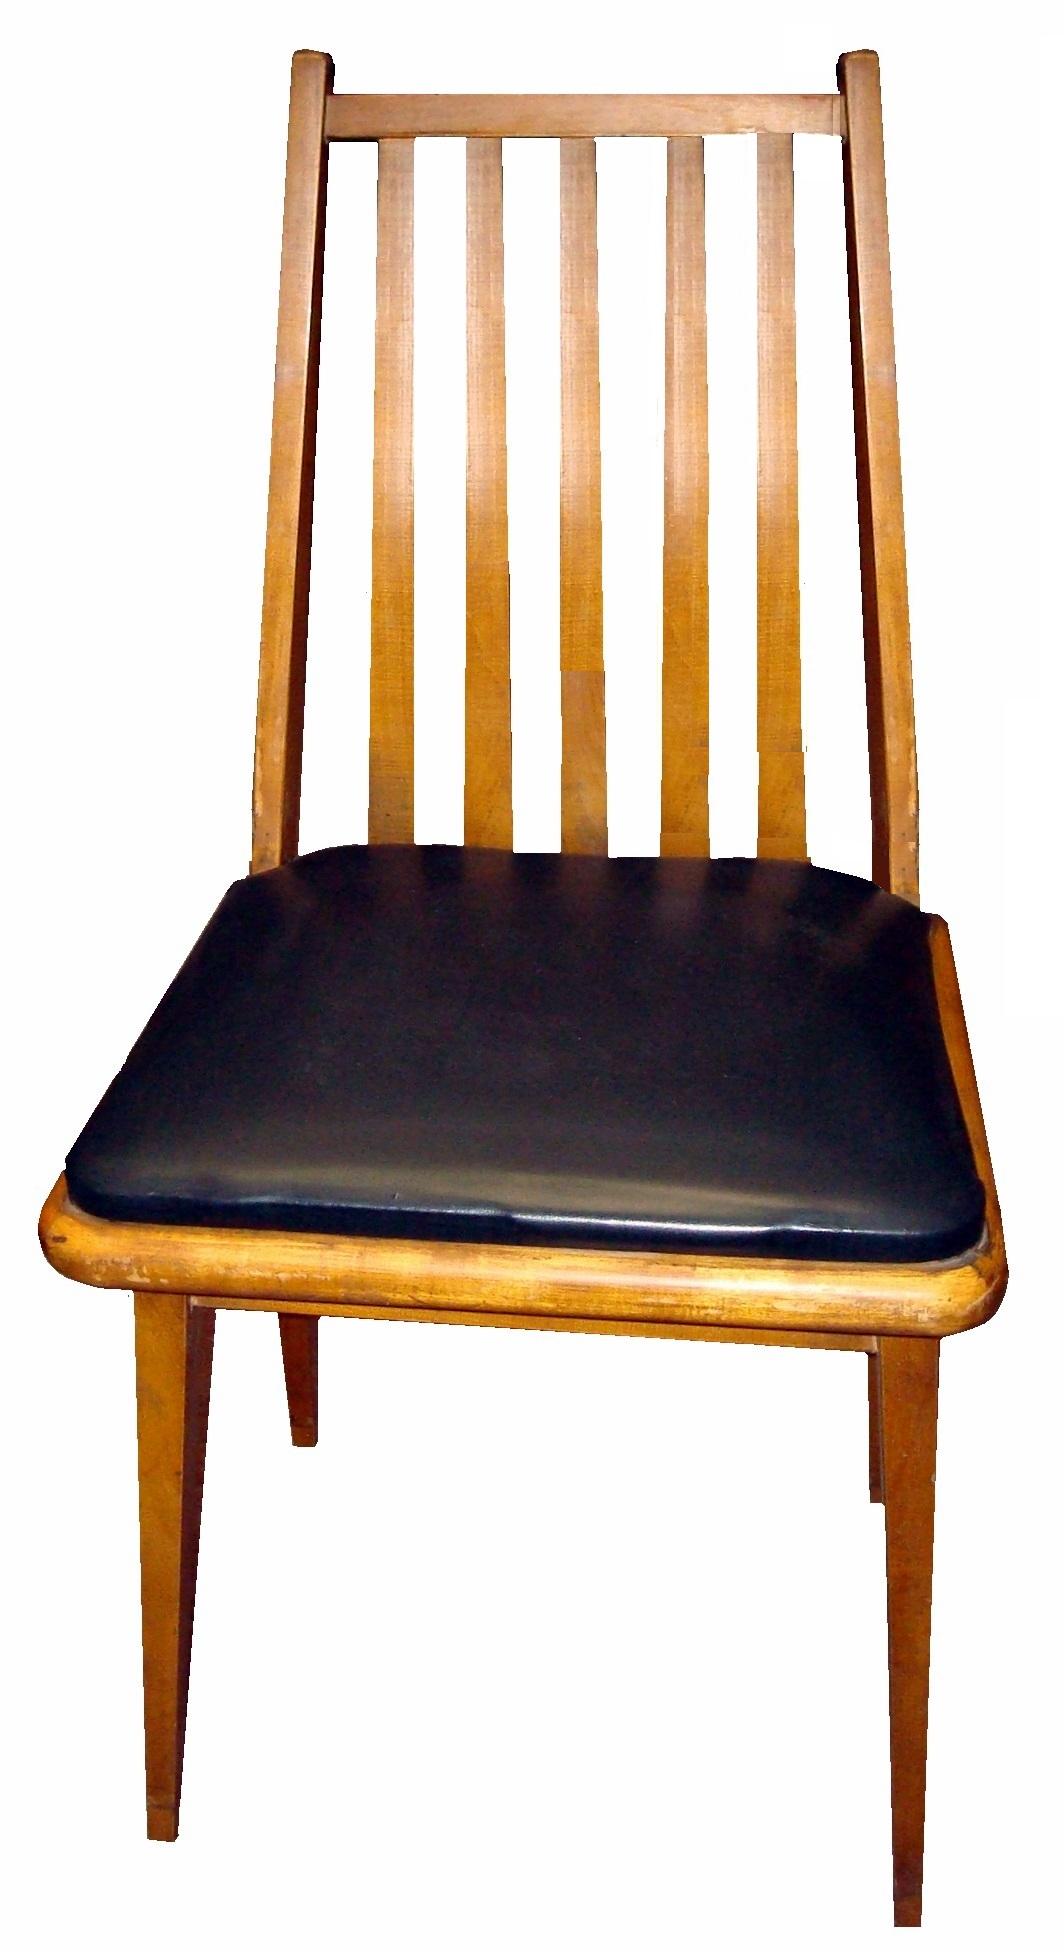 6 Stühle

MATERIAL: Holz
Land: italienisch
Jahr: 1950
Wir haben uns seit 1982 auf den Verkauf von Art Deco, Art Nouveau und Vintage spezialisiert und stehen Ihnen bei Fragen gerne zur Verfügung.
Drücken Sie auf die Schaltfläche 